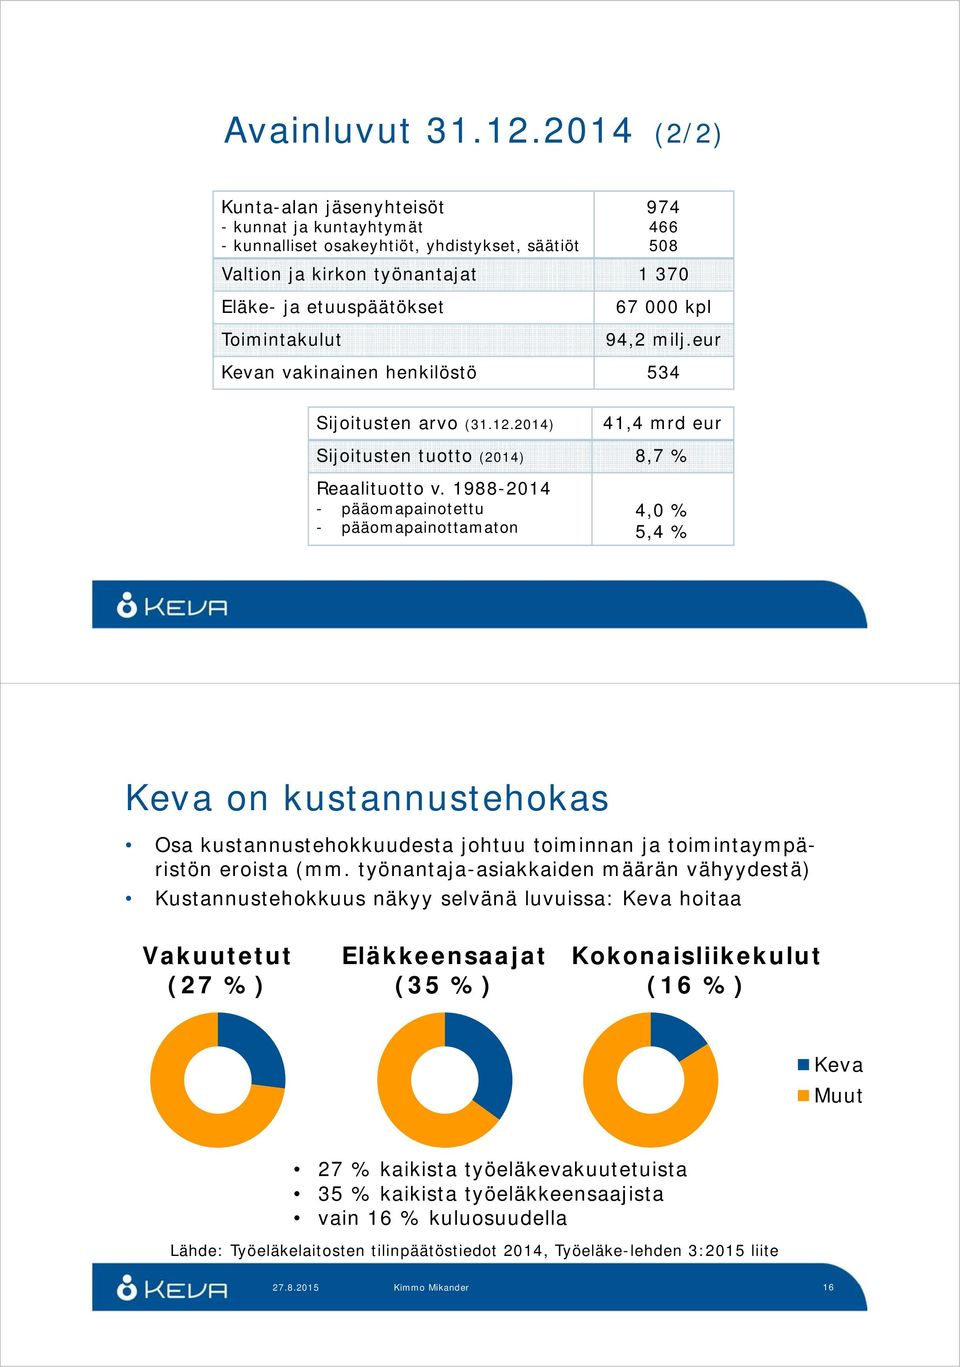 000 kpl 94,2 milj.eur Kevan vakinainen henkilöstö 534 Sijoitusten arvo (31.12.2014) 41,4 mrd eur Sijoitusten tuotto (2014) 8,7 % Reaalituotto v.